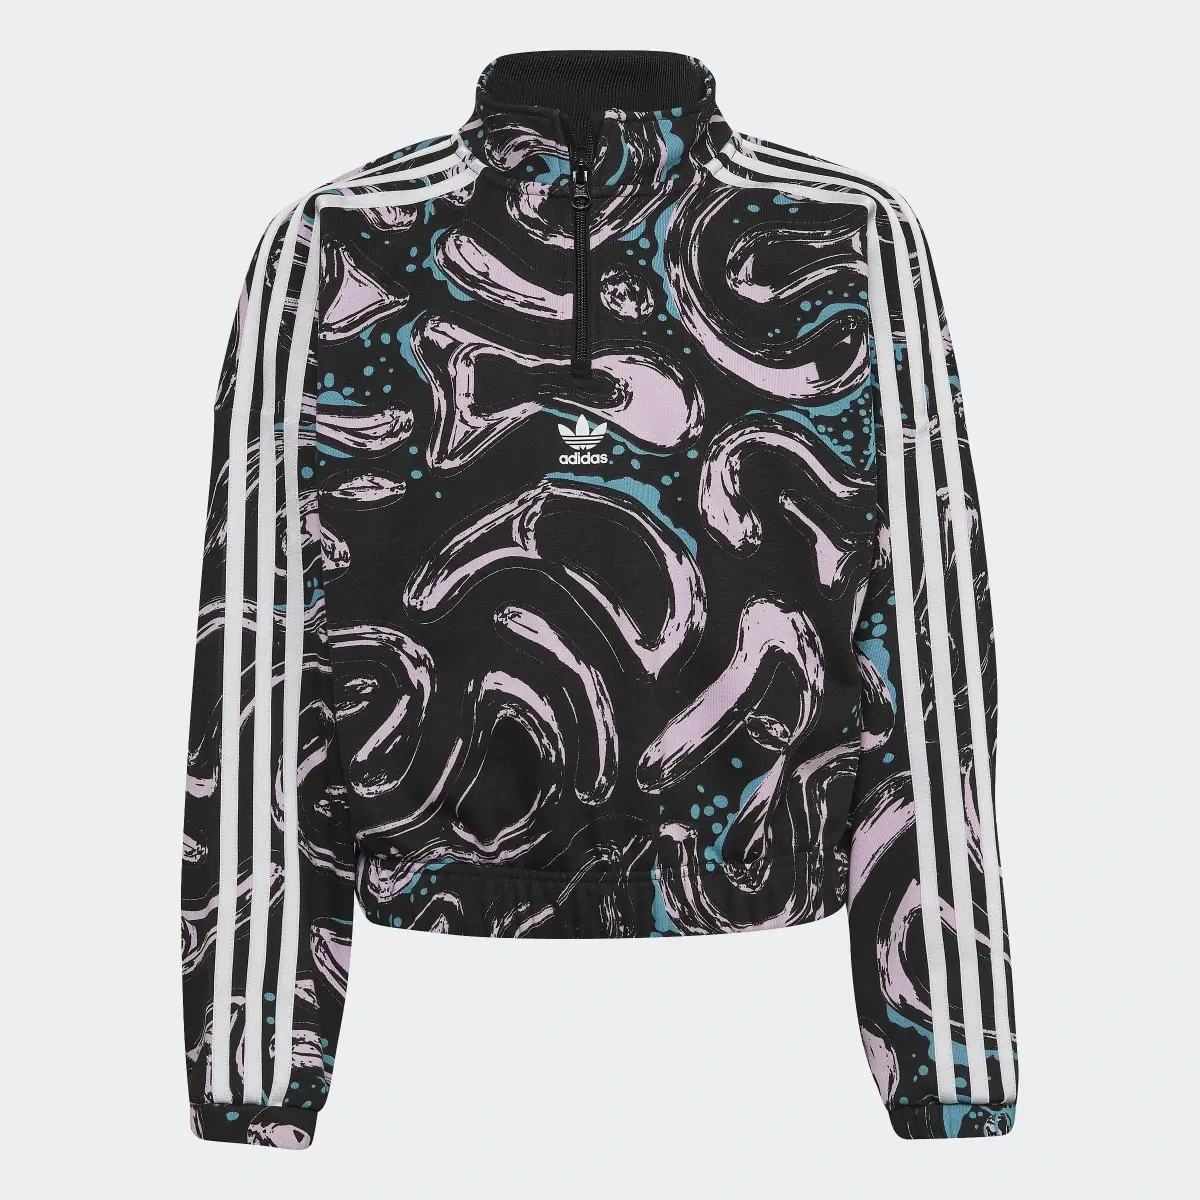 Adidas Allover Print Half-Zip Crop Crew Sweatshirt. 1